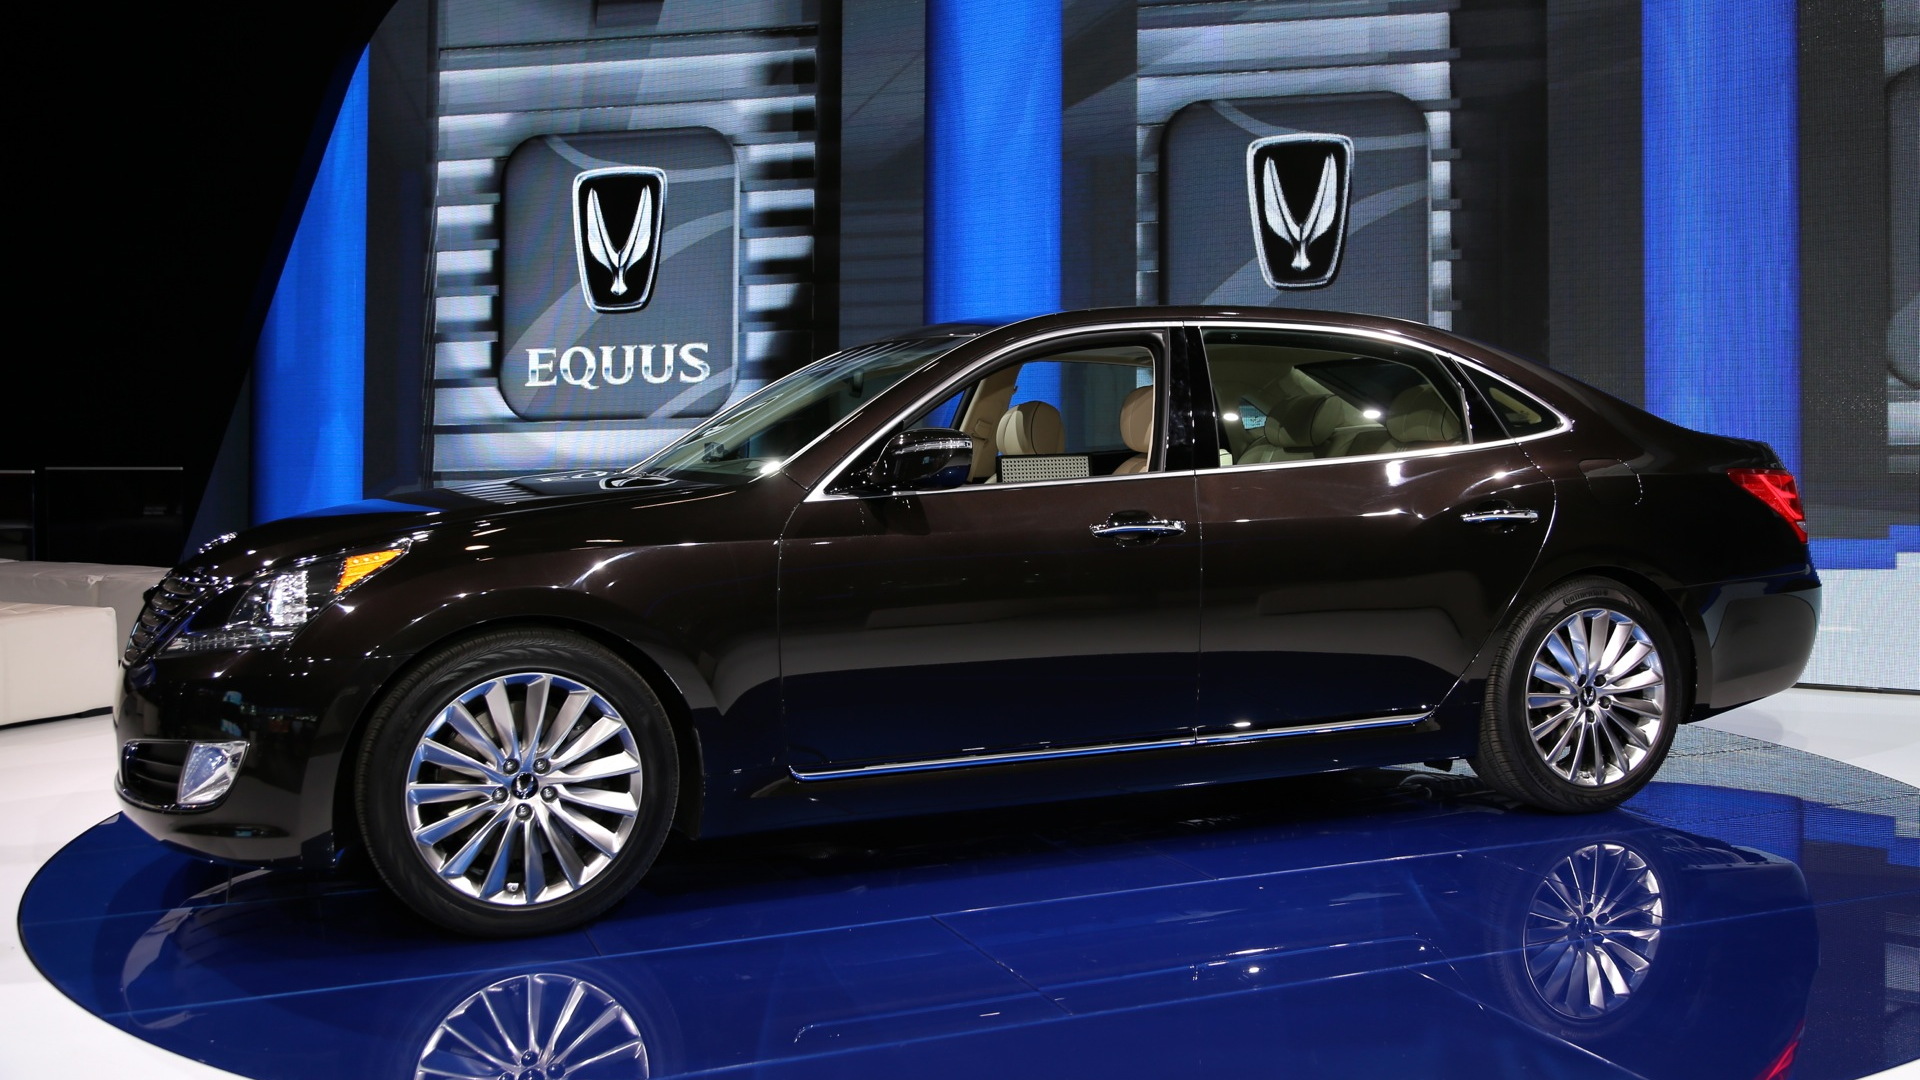 2014 Hyundai Equus Live Photos, 2013 New York Auto Show